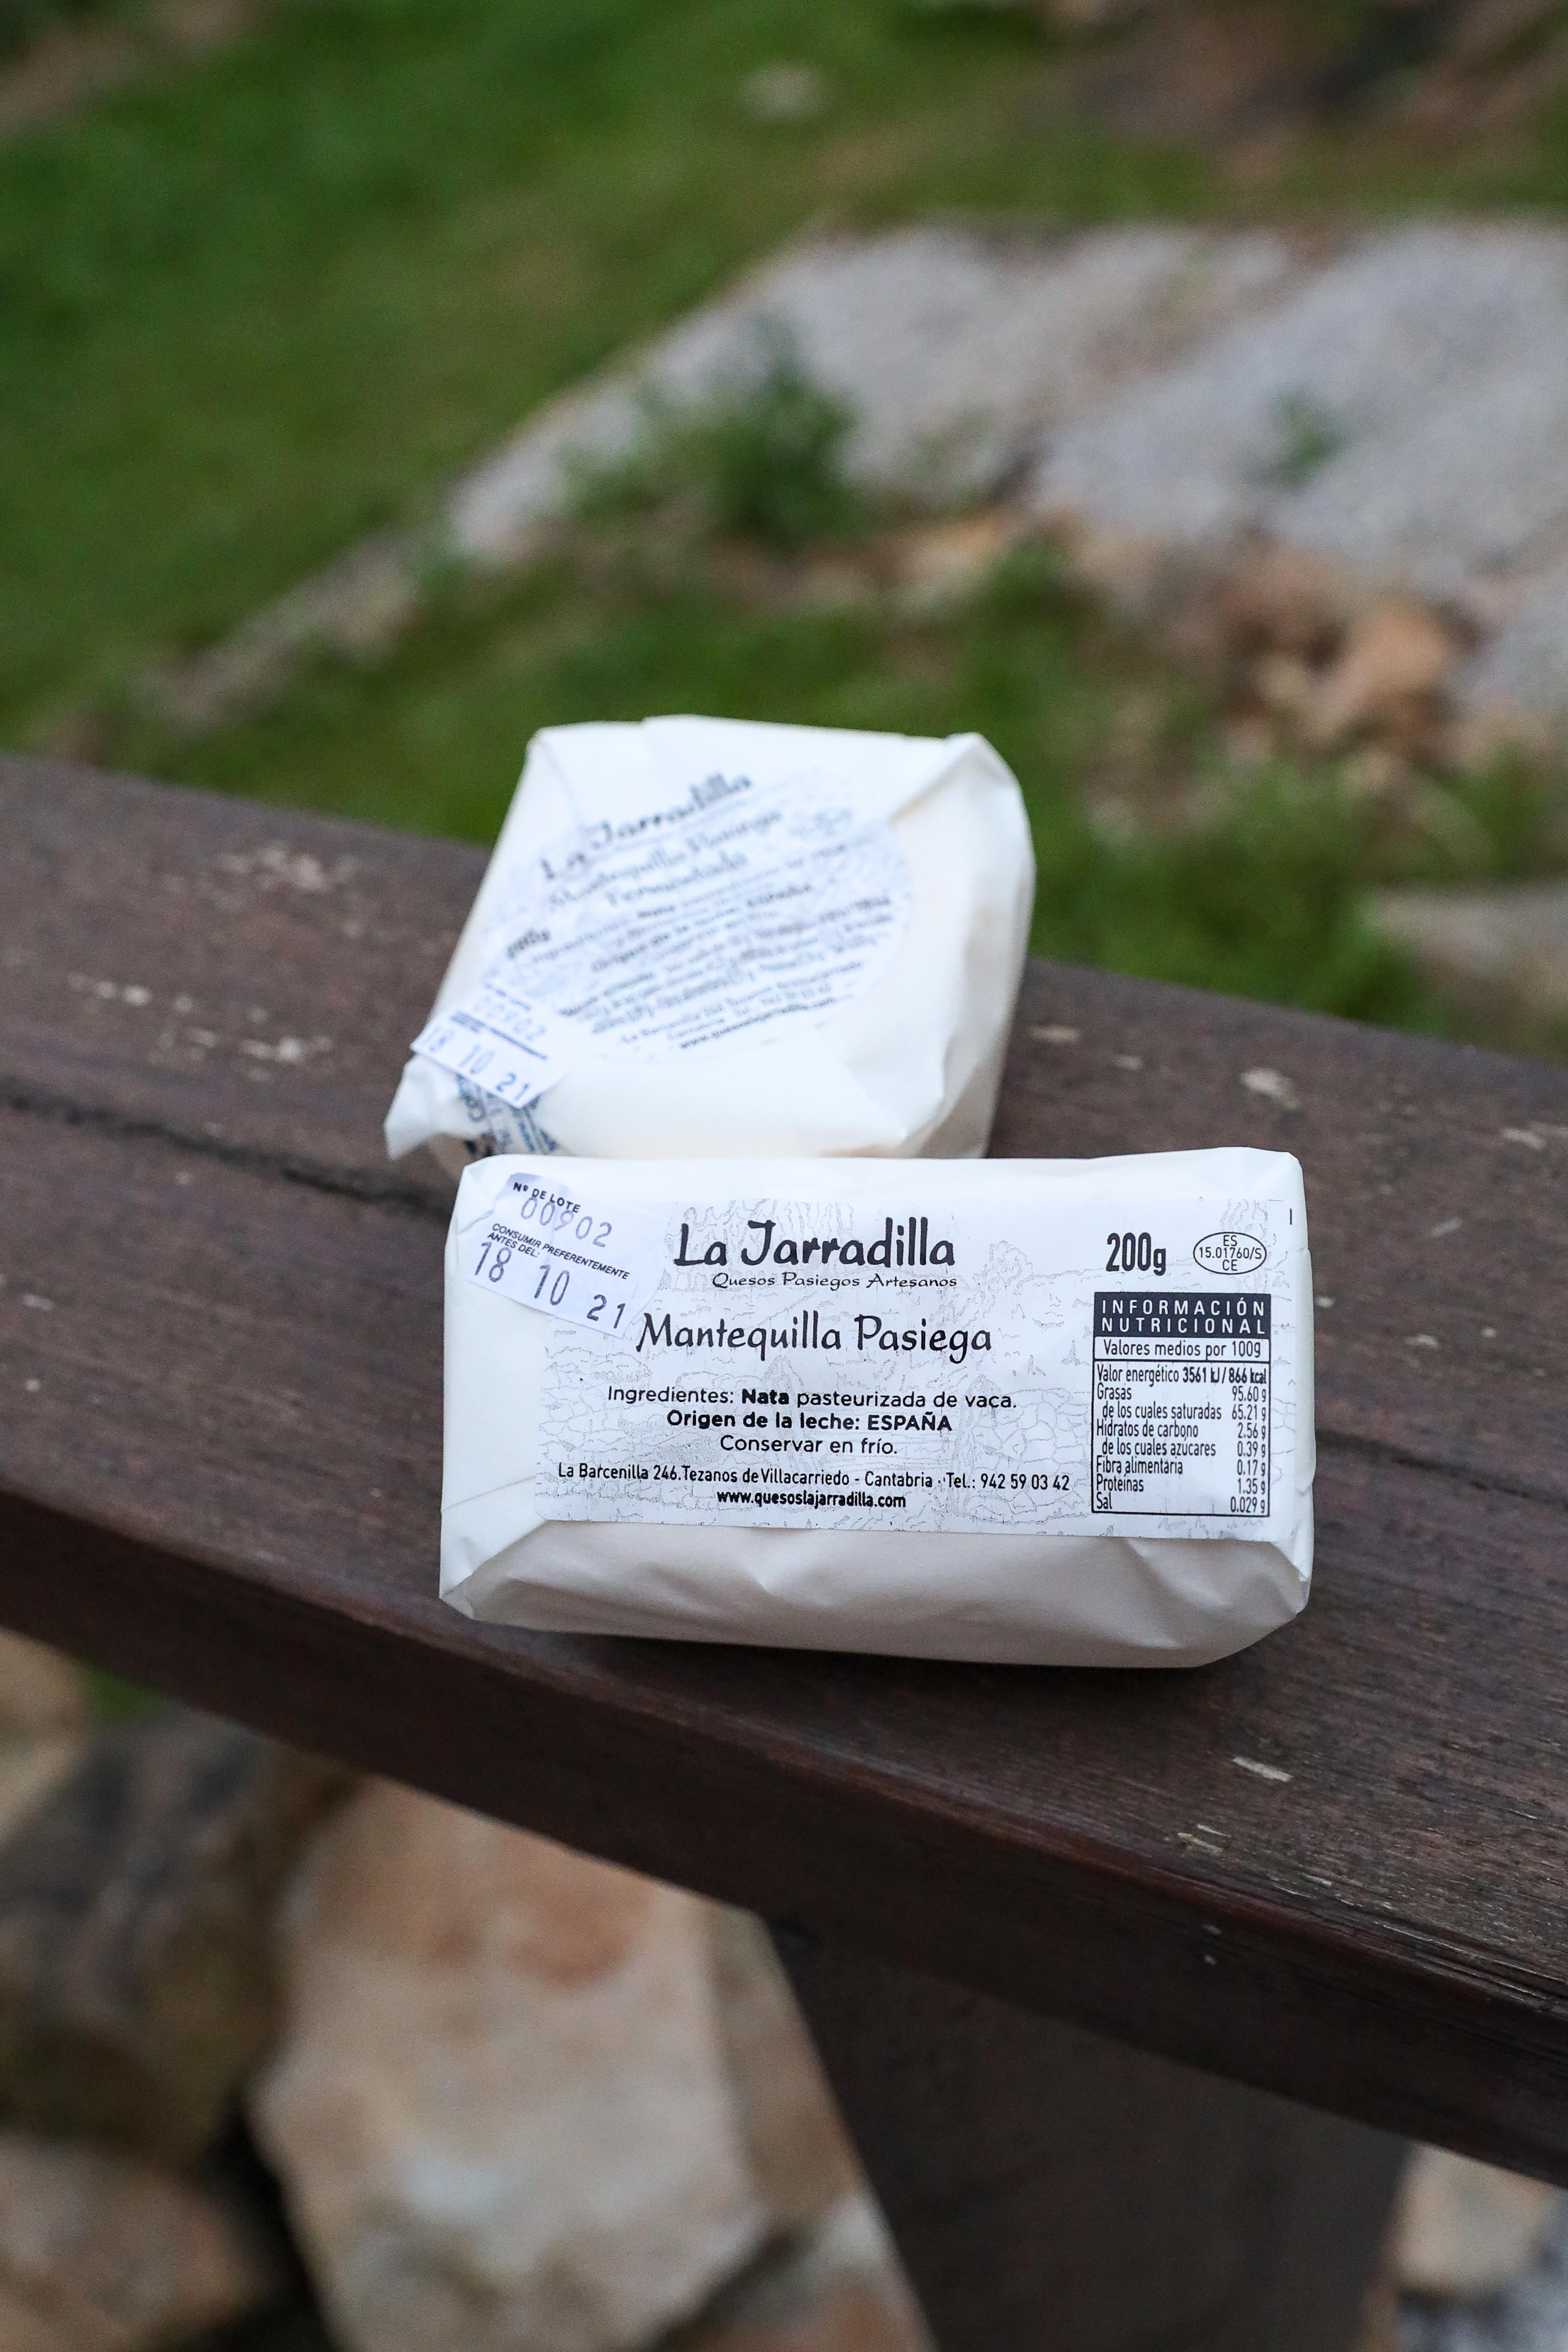 Butter "La Jarradilla" (Cantabria, Spain)